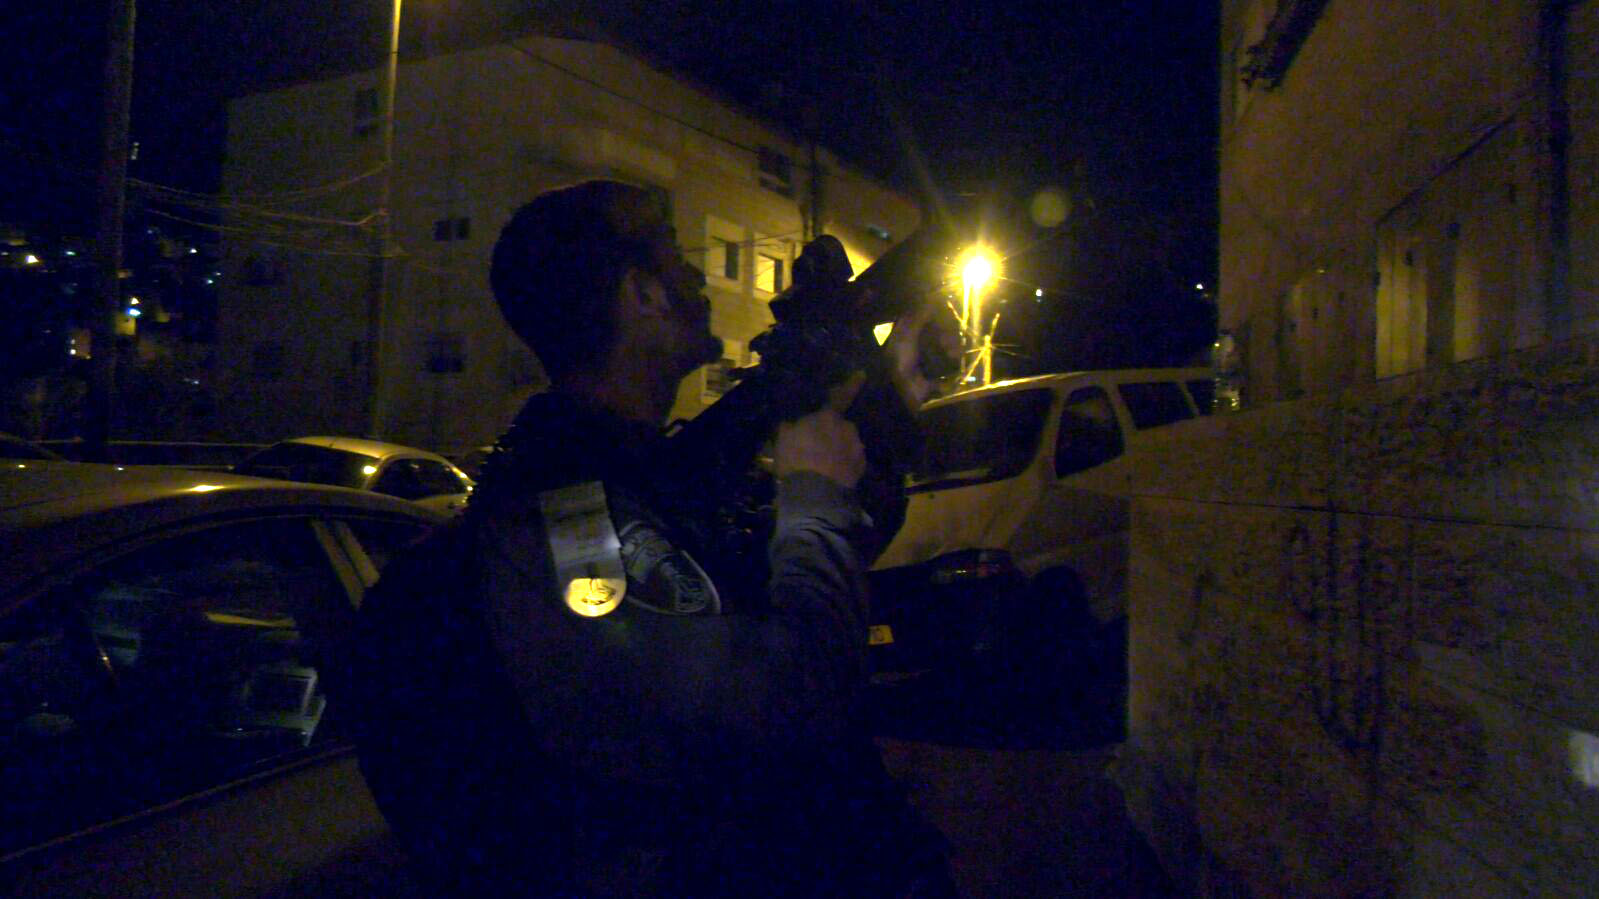 אלה המראות מהם מנסים להימנע. מבצע מעצרים לילי של משטרת ישראל, ארכיון. (צילום: דוברות המשטרה)